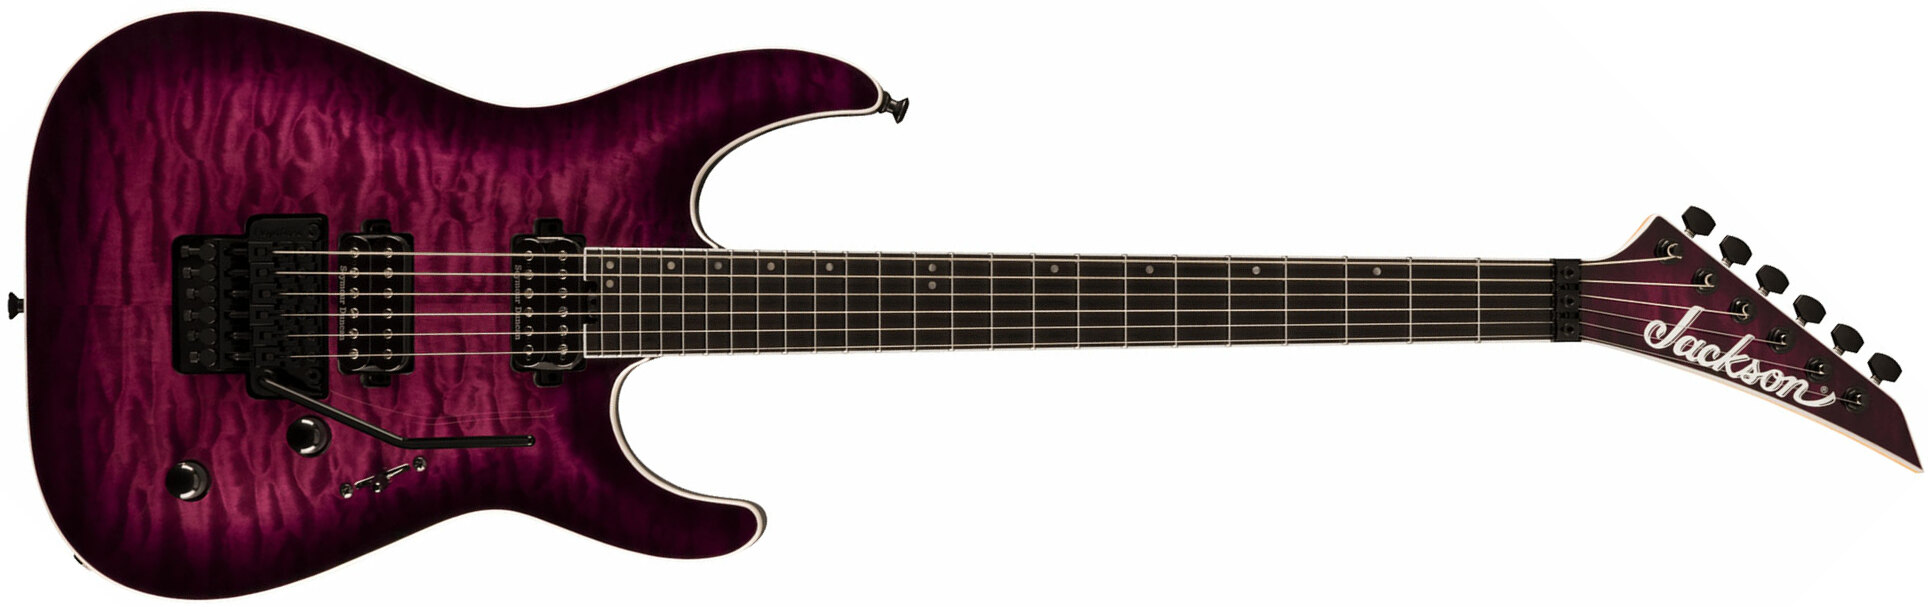 Jackson Dinky Dkaq Pro Plus 2h Seymour Duncan Fr Eb - Transparent Purple Burst - Str shape electric guitar - Main picture